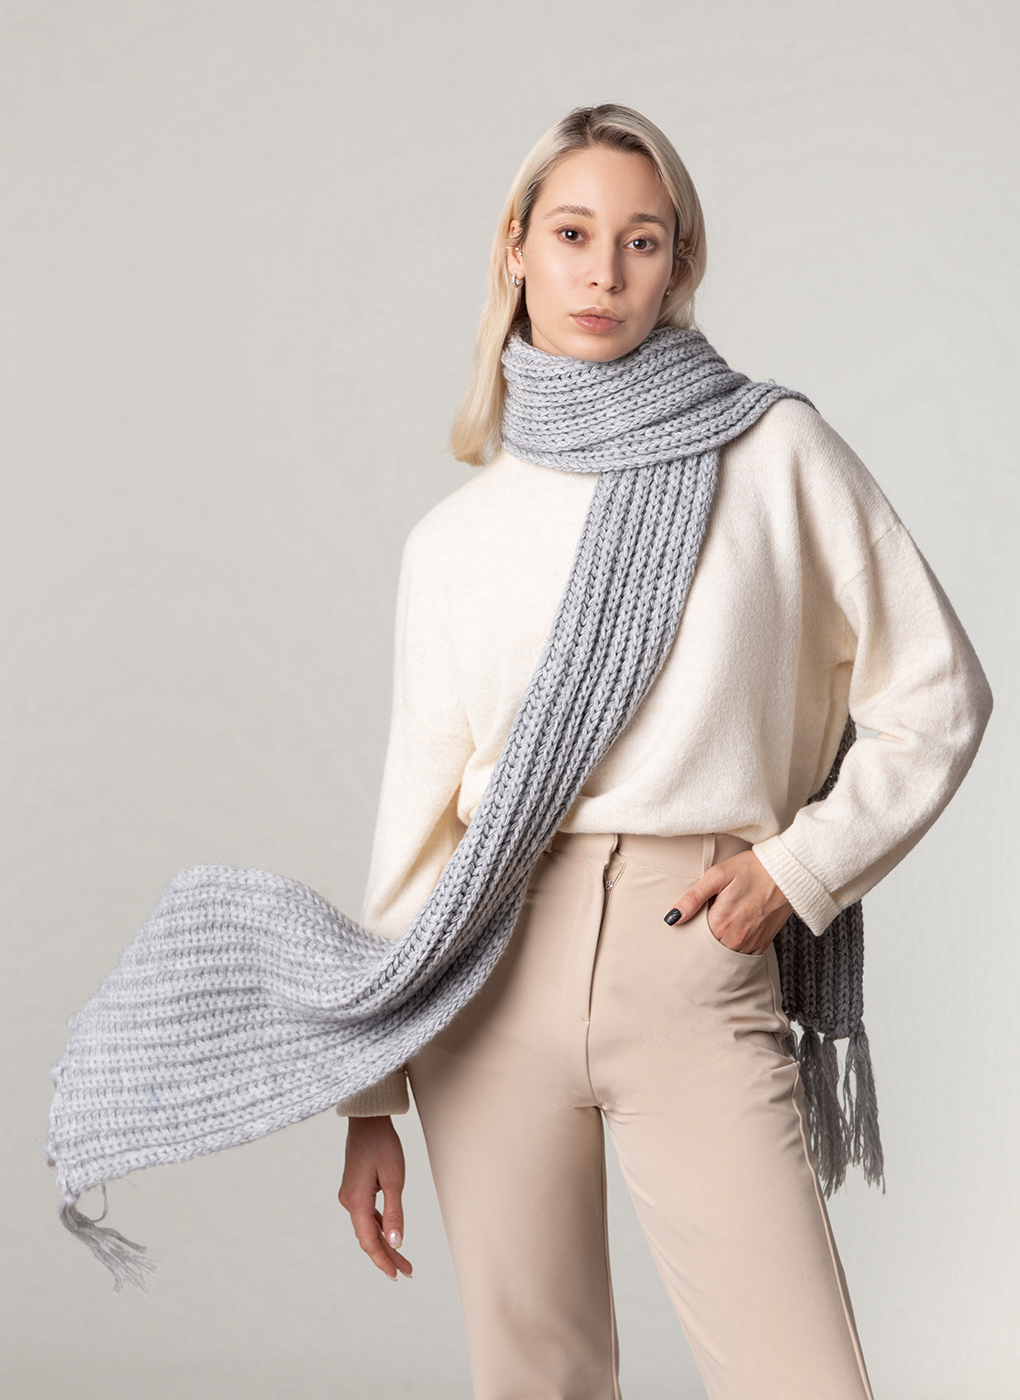 Трикотажные женские шарфы, платки, снуды купить недорого в интернет-магазине GroupPrice